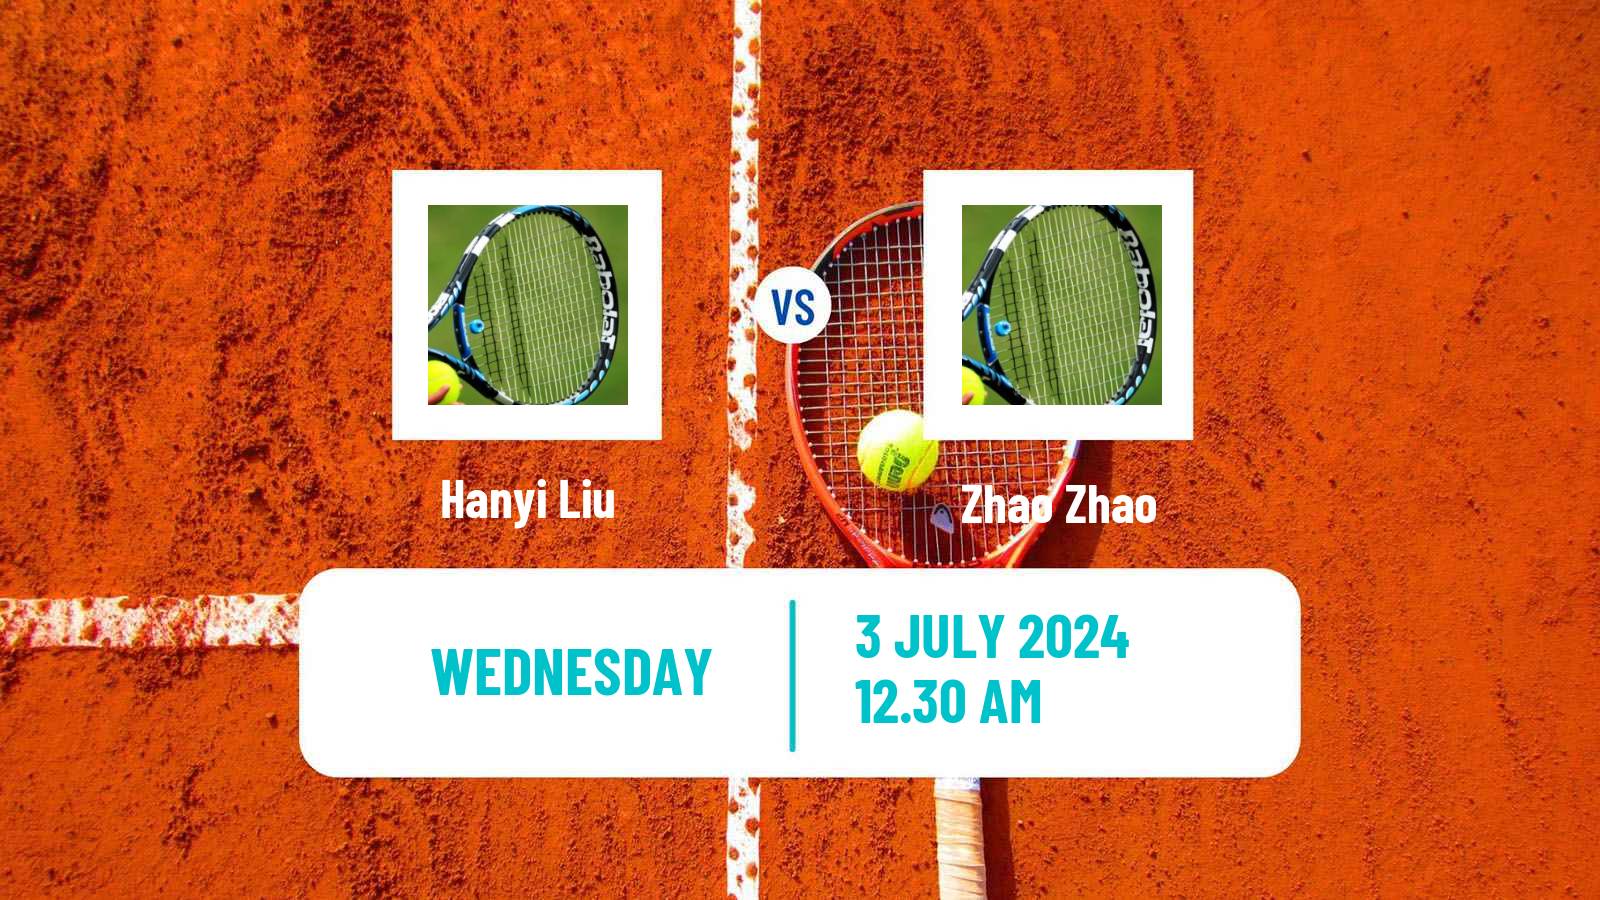 Tennis ITF M15 Tianjin 2 Men Hanyi Liu - Zhao Zhao